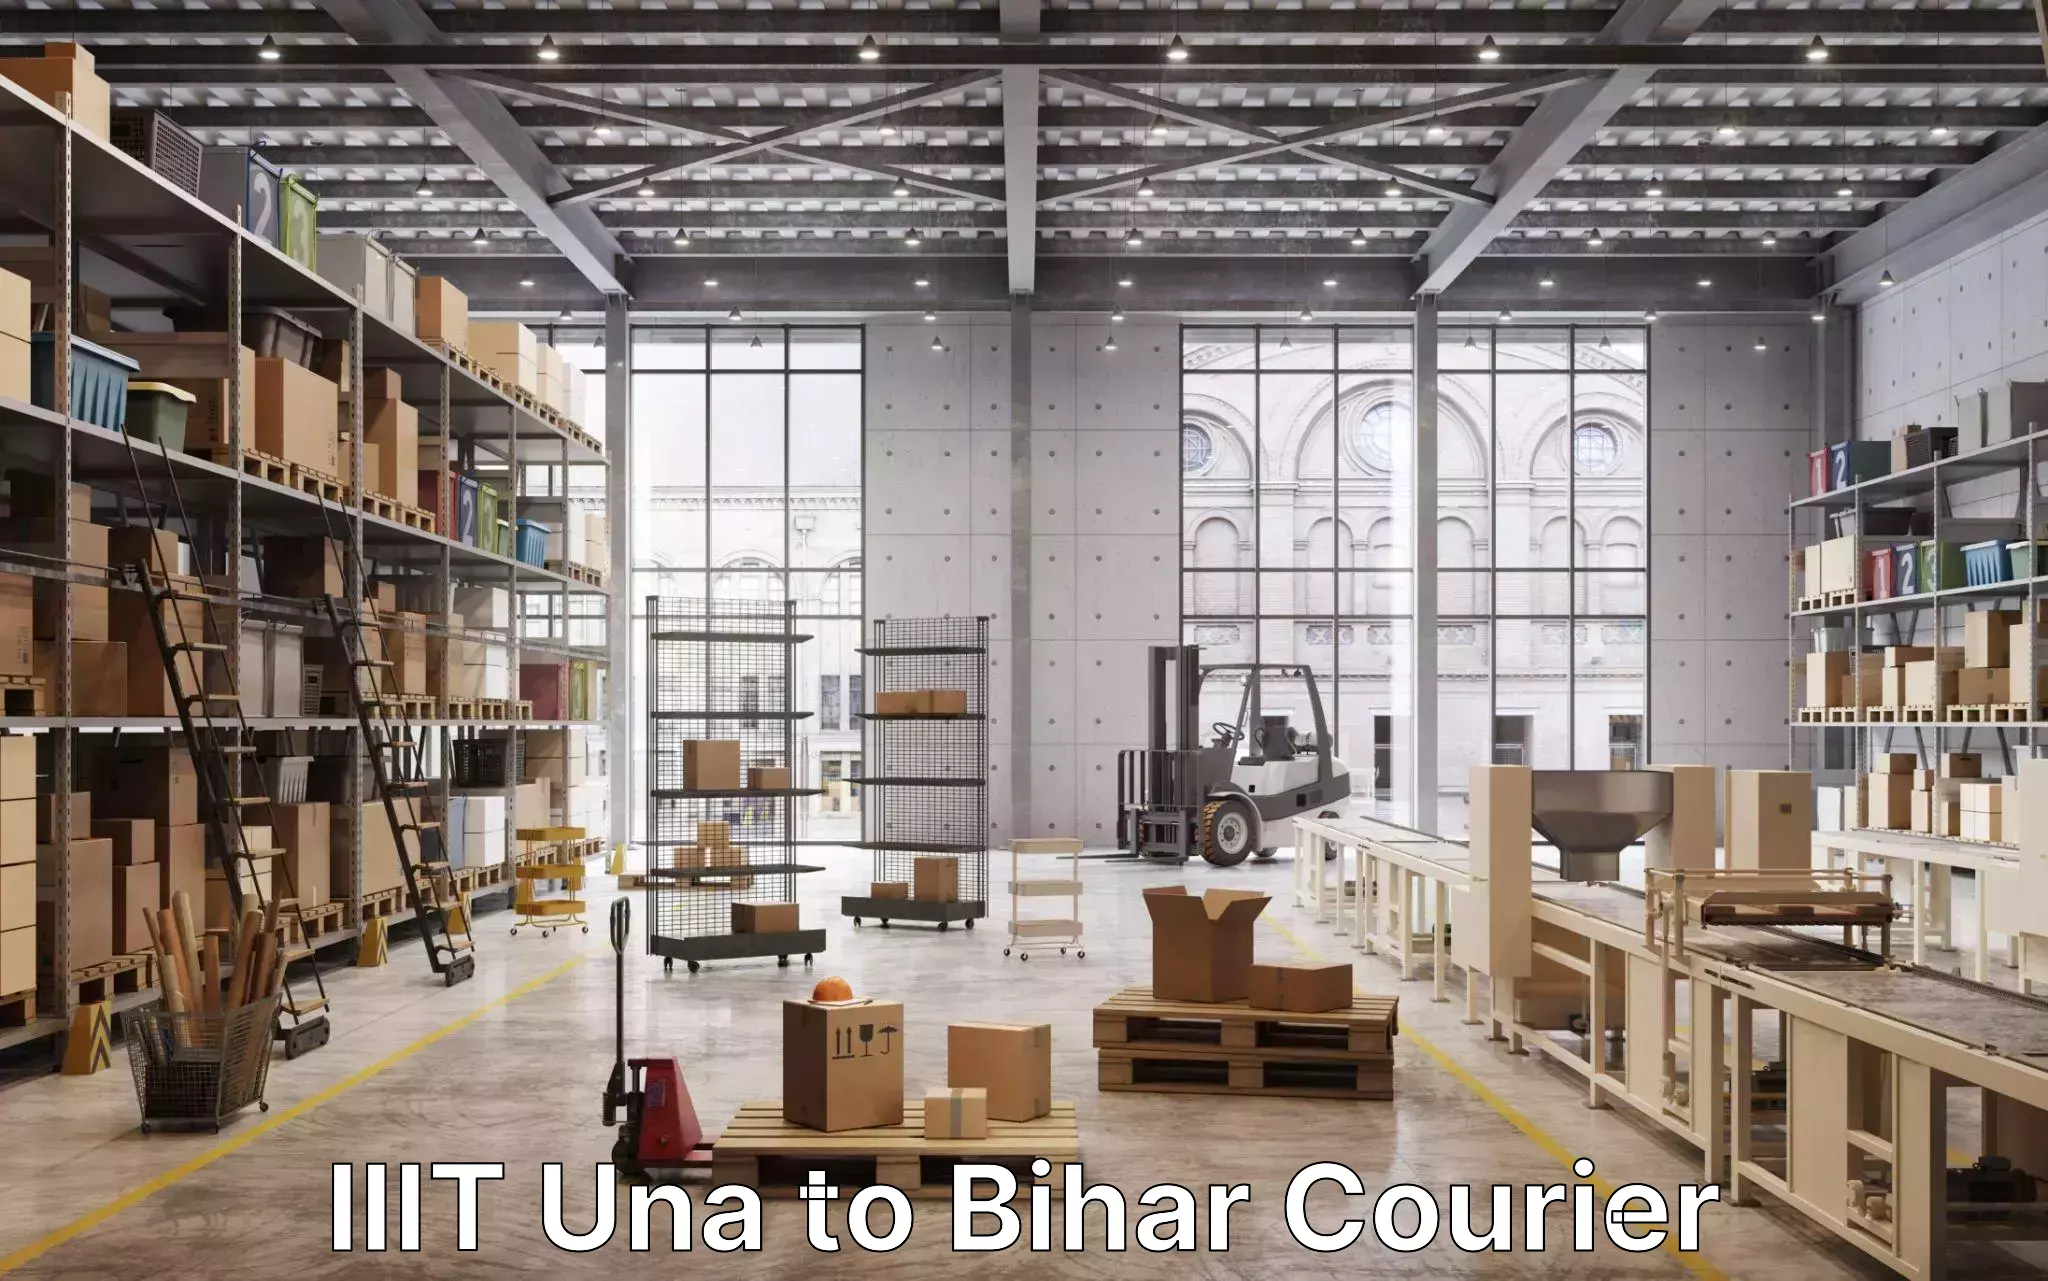 Efficient furniture shifting IIIT Una to Bihar